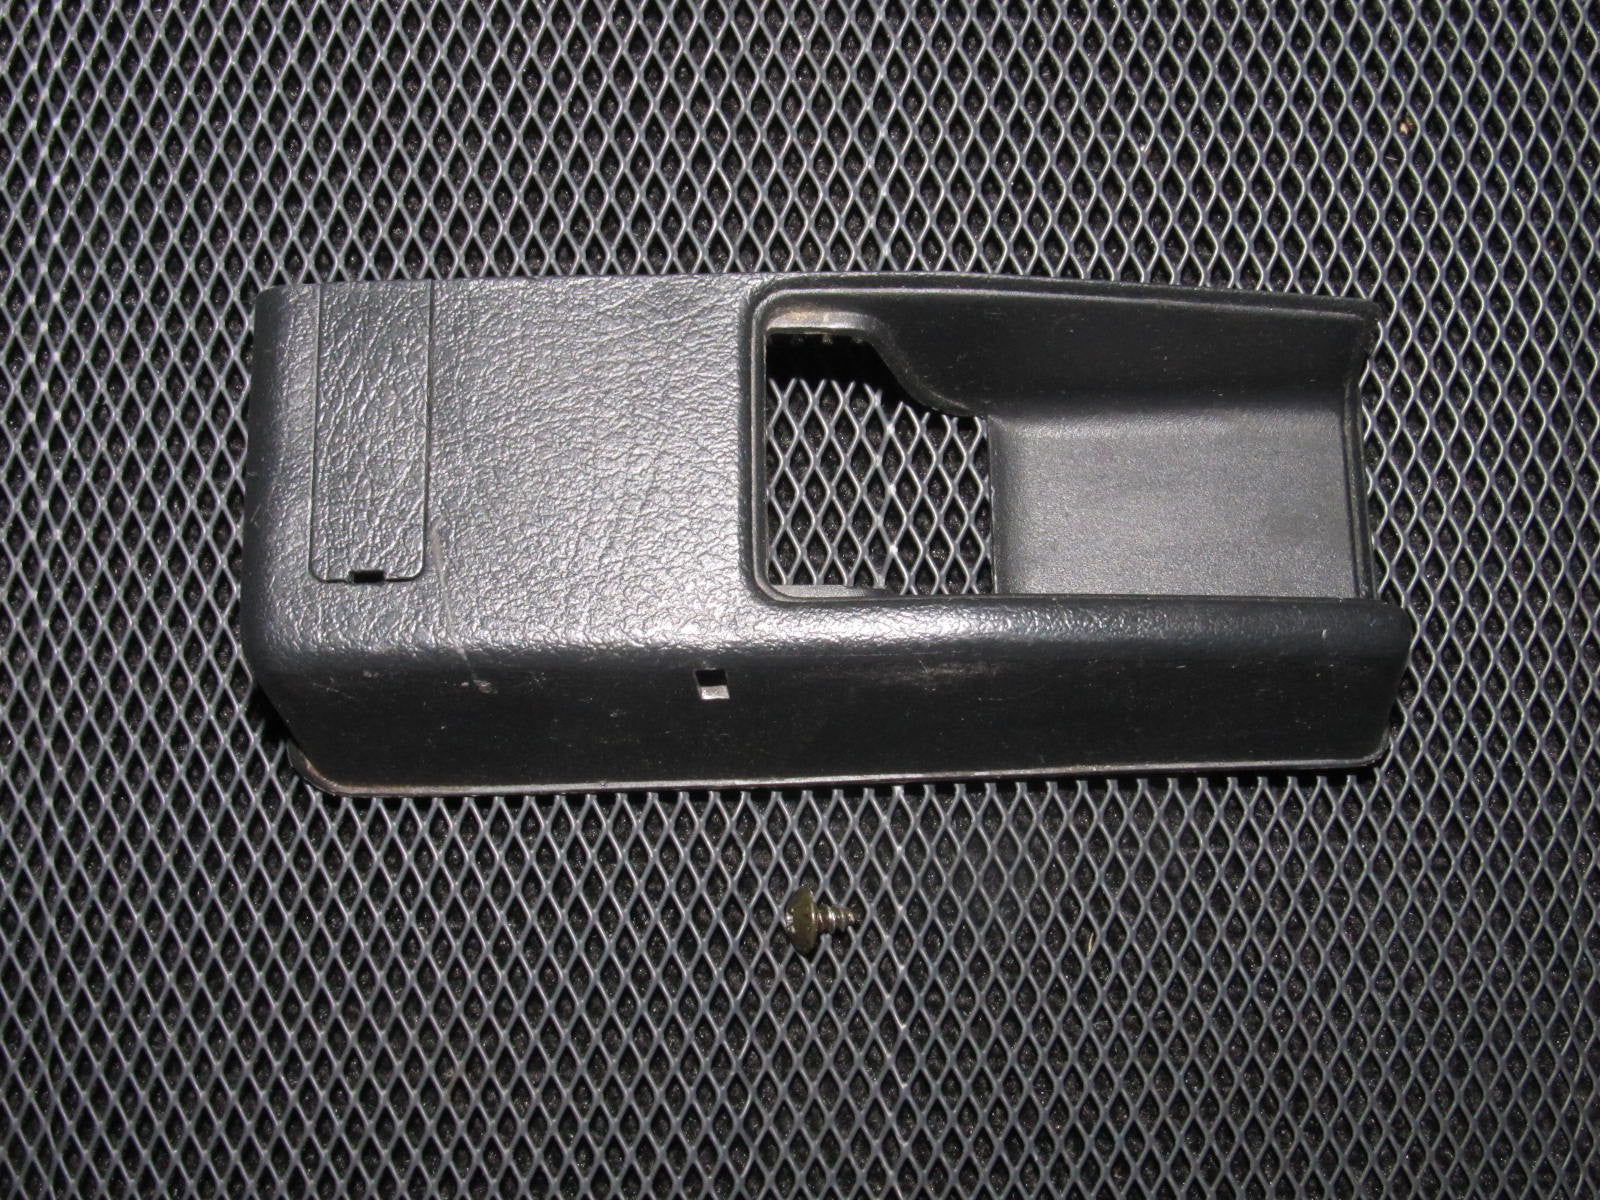 90-93 Acura Integra OEM Black Trunk & Gas Door Release Switch Cover Bezel Trim